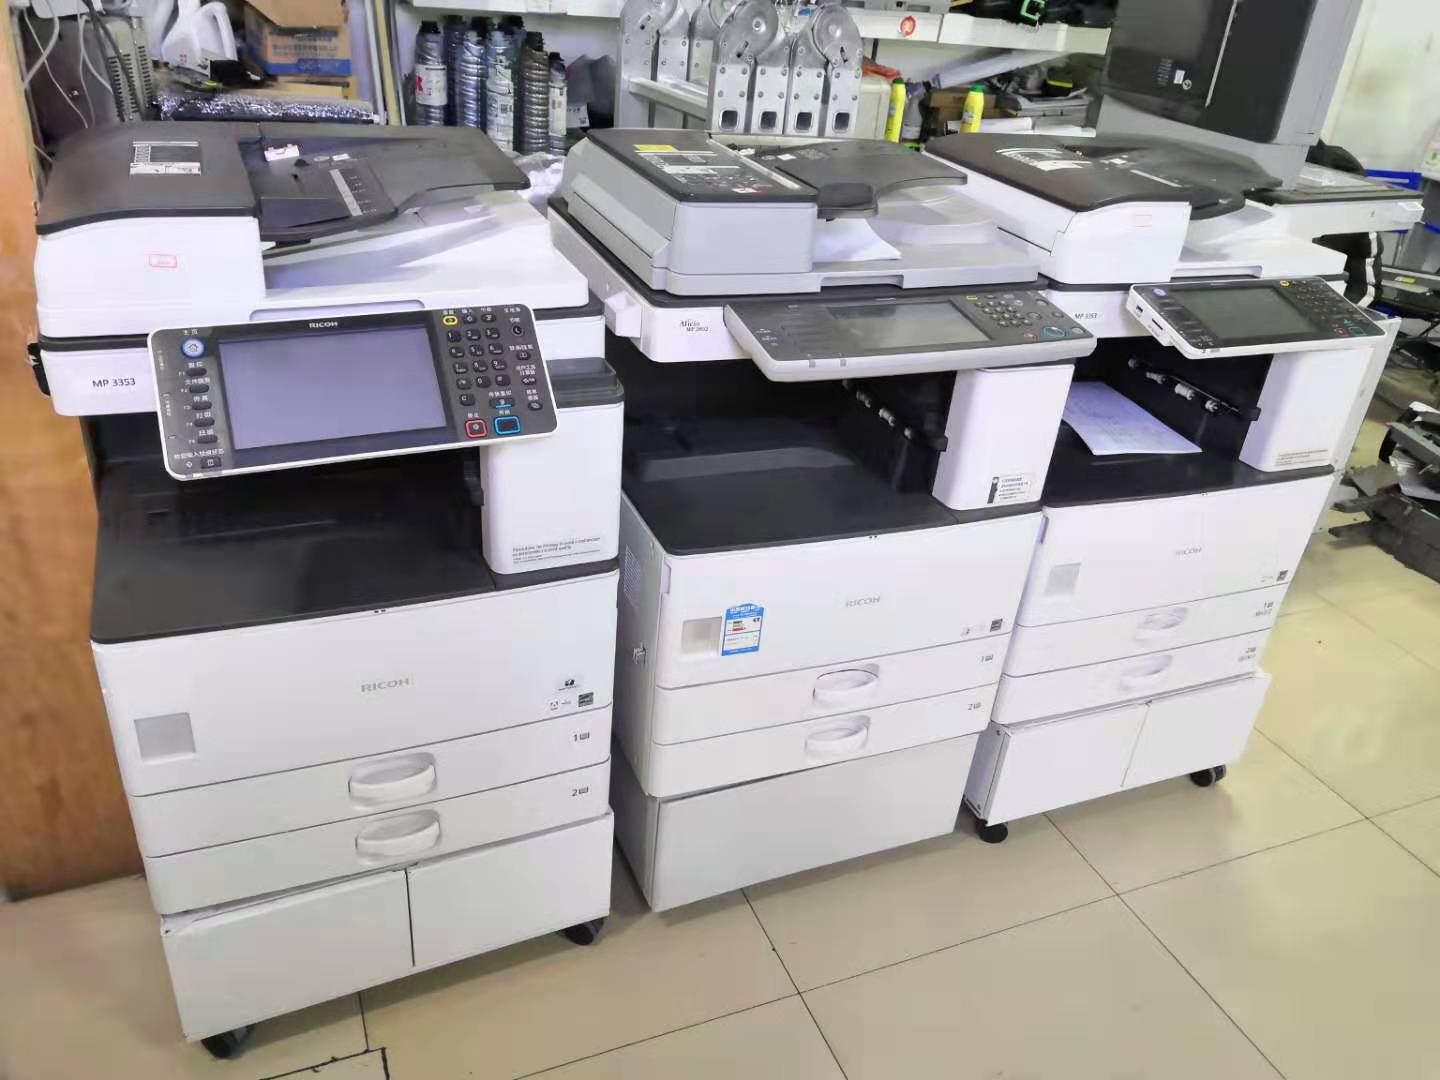 襄阳复印机出租使用中有哪几点误区需要避免